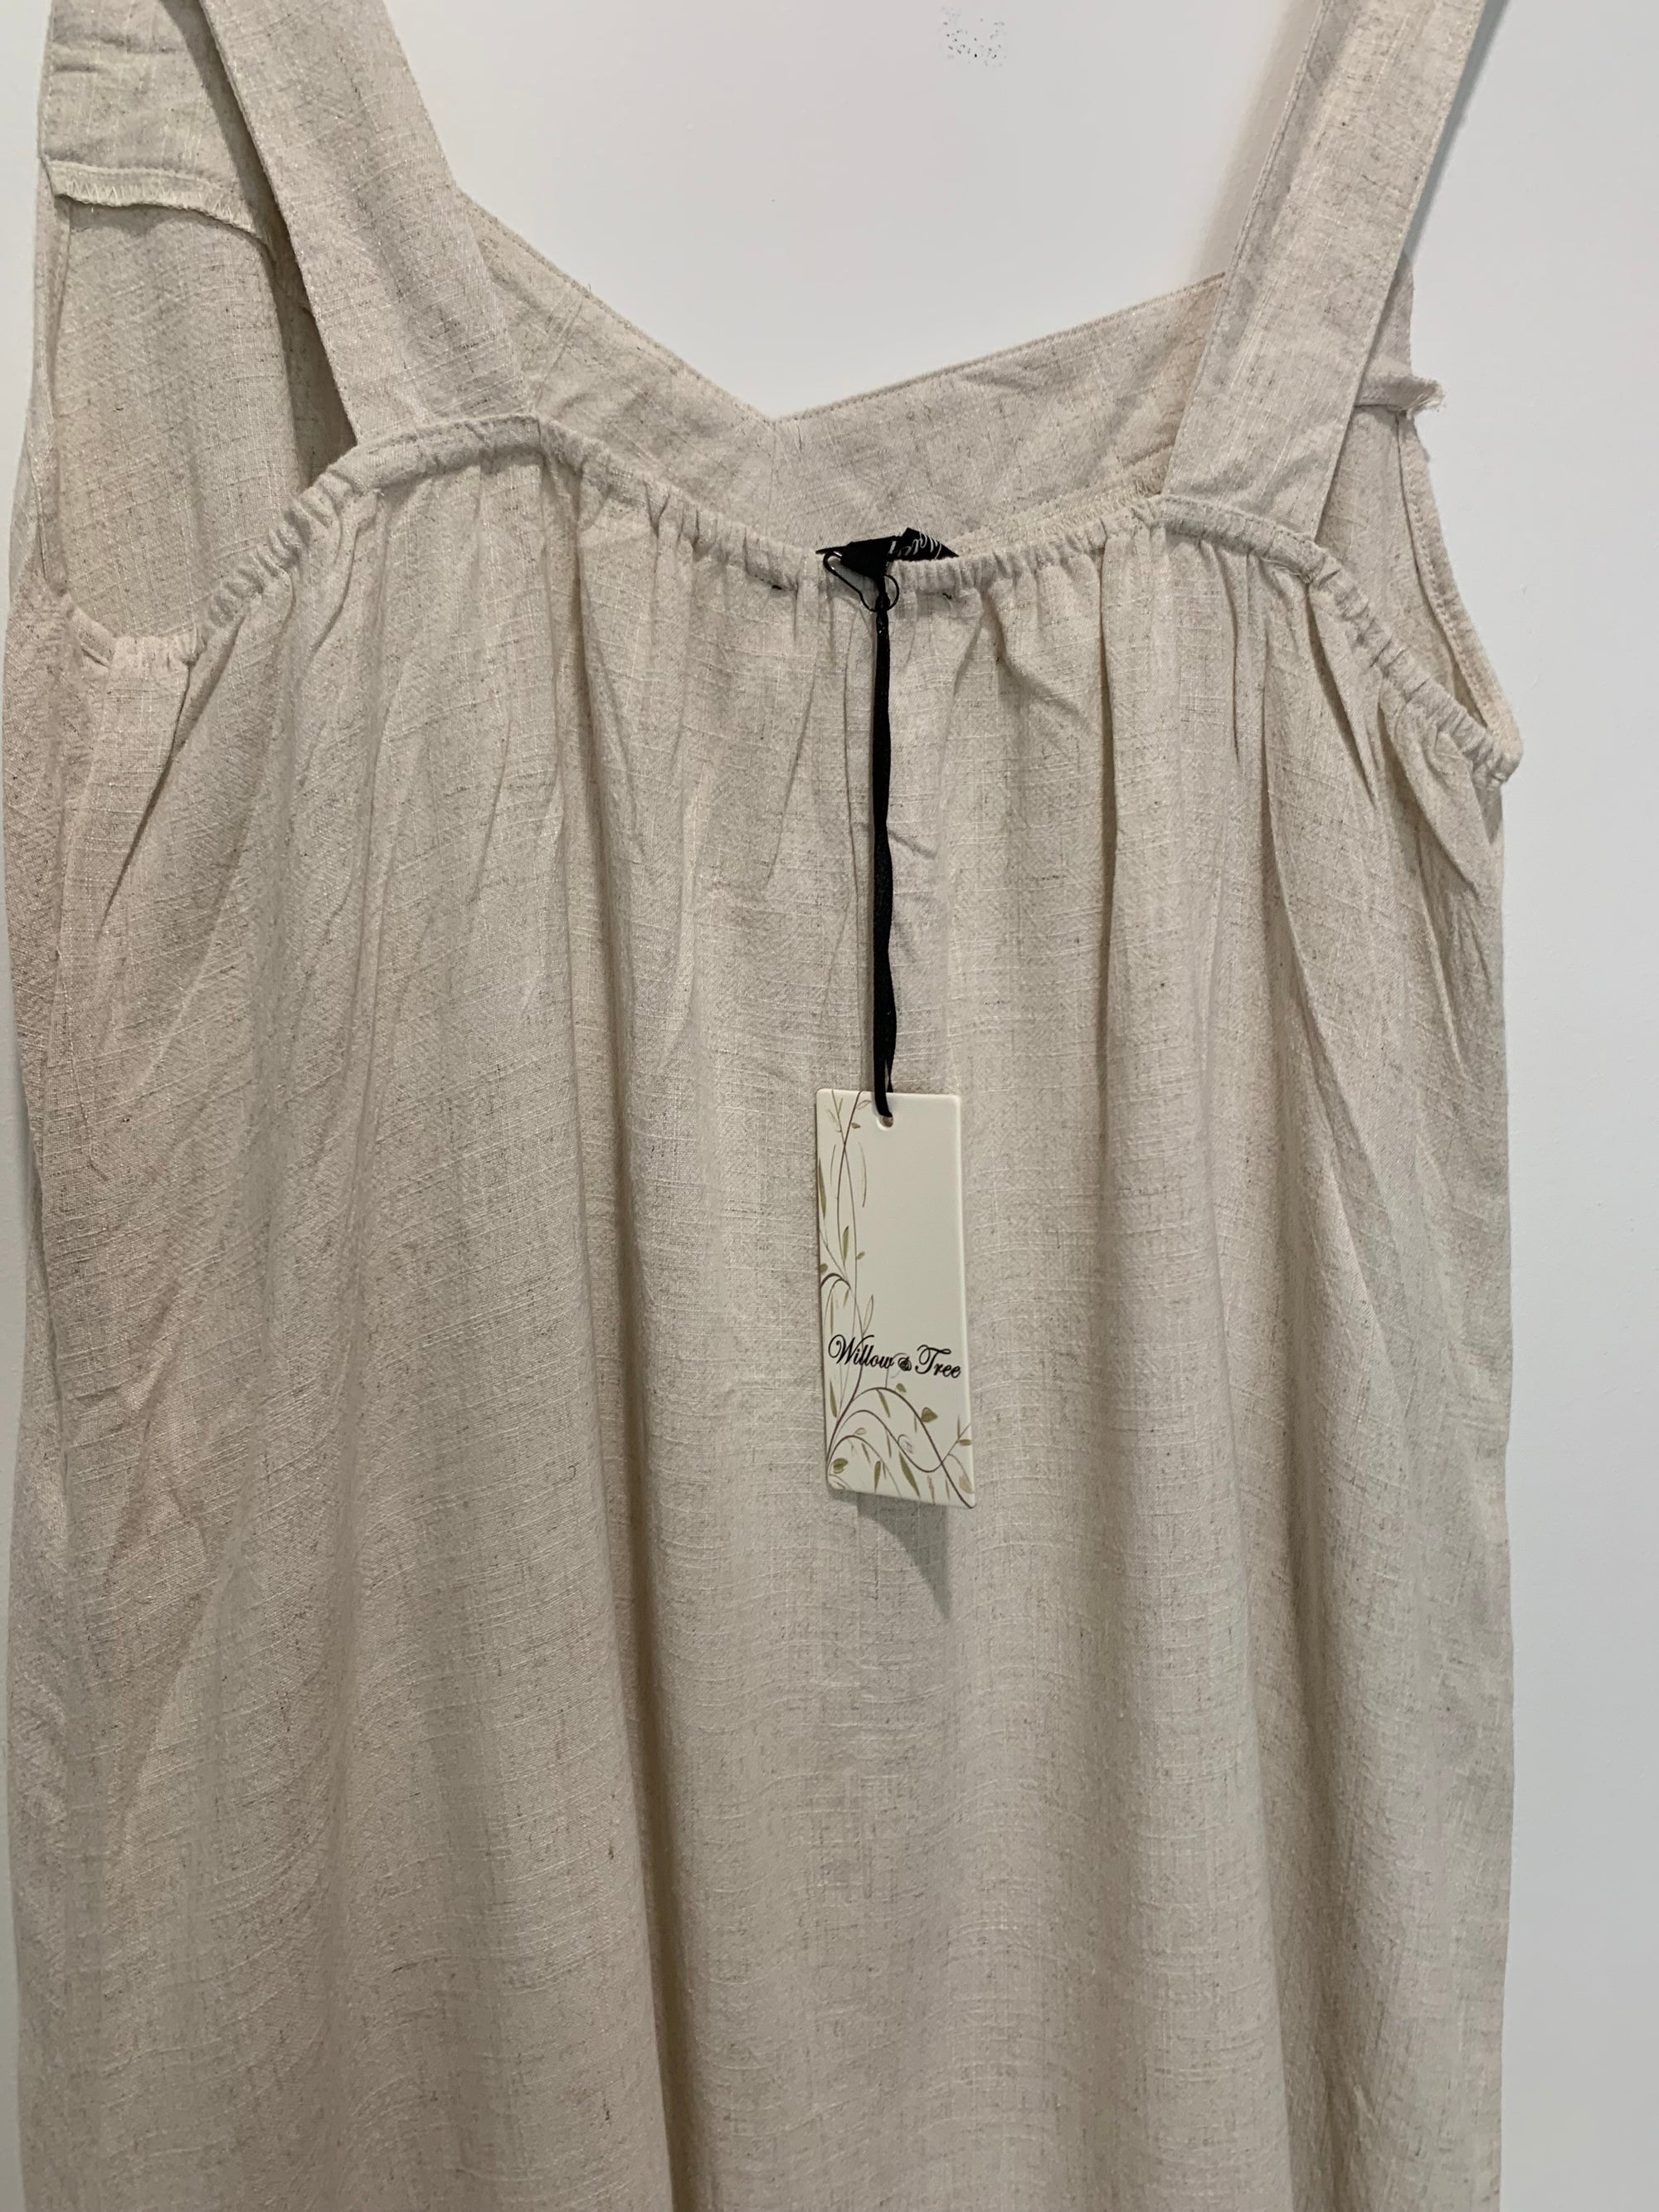 Long Singlet Style Maxi Dress in Beige Linen Blend